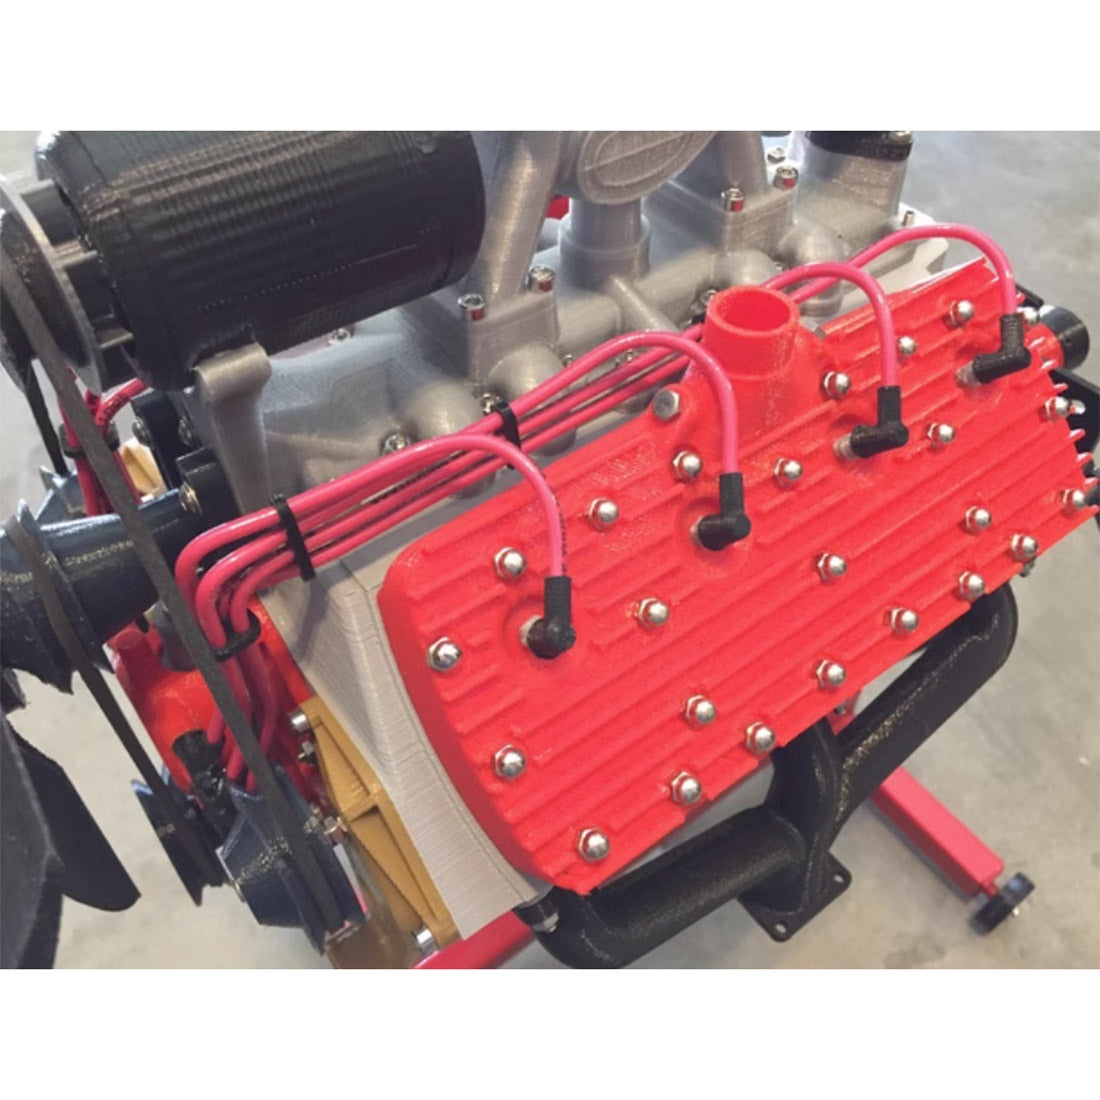 TOYAN HOWIN FS-V800 - Kit de motor de 8 cilindros modelo Nitro refrigerado  por agua de cuatro tiempos para coche RC, barco, ciencia física, juguete de